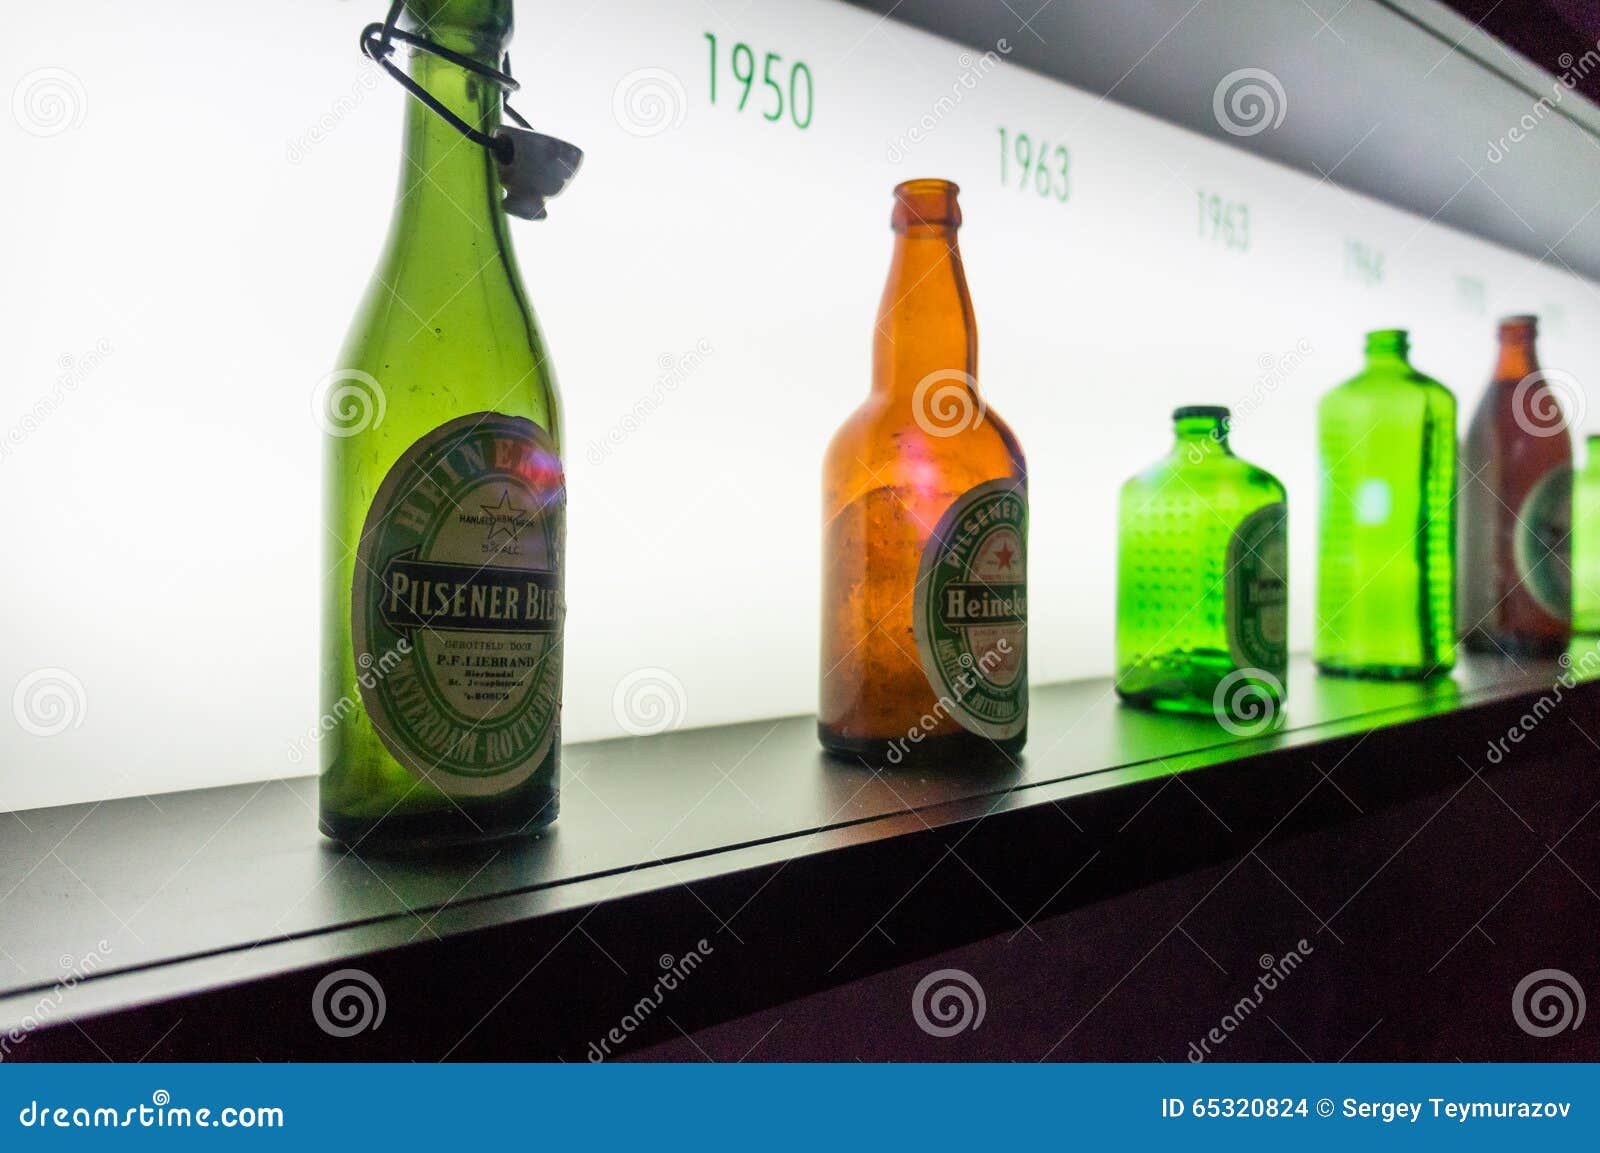 Heineken Beer On Display At The Convenience Store Shelves 7-11 ...